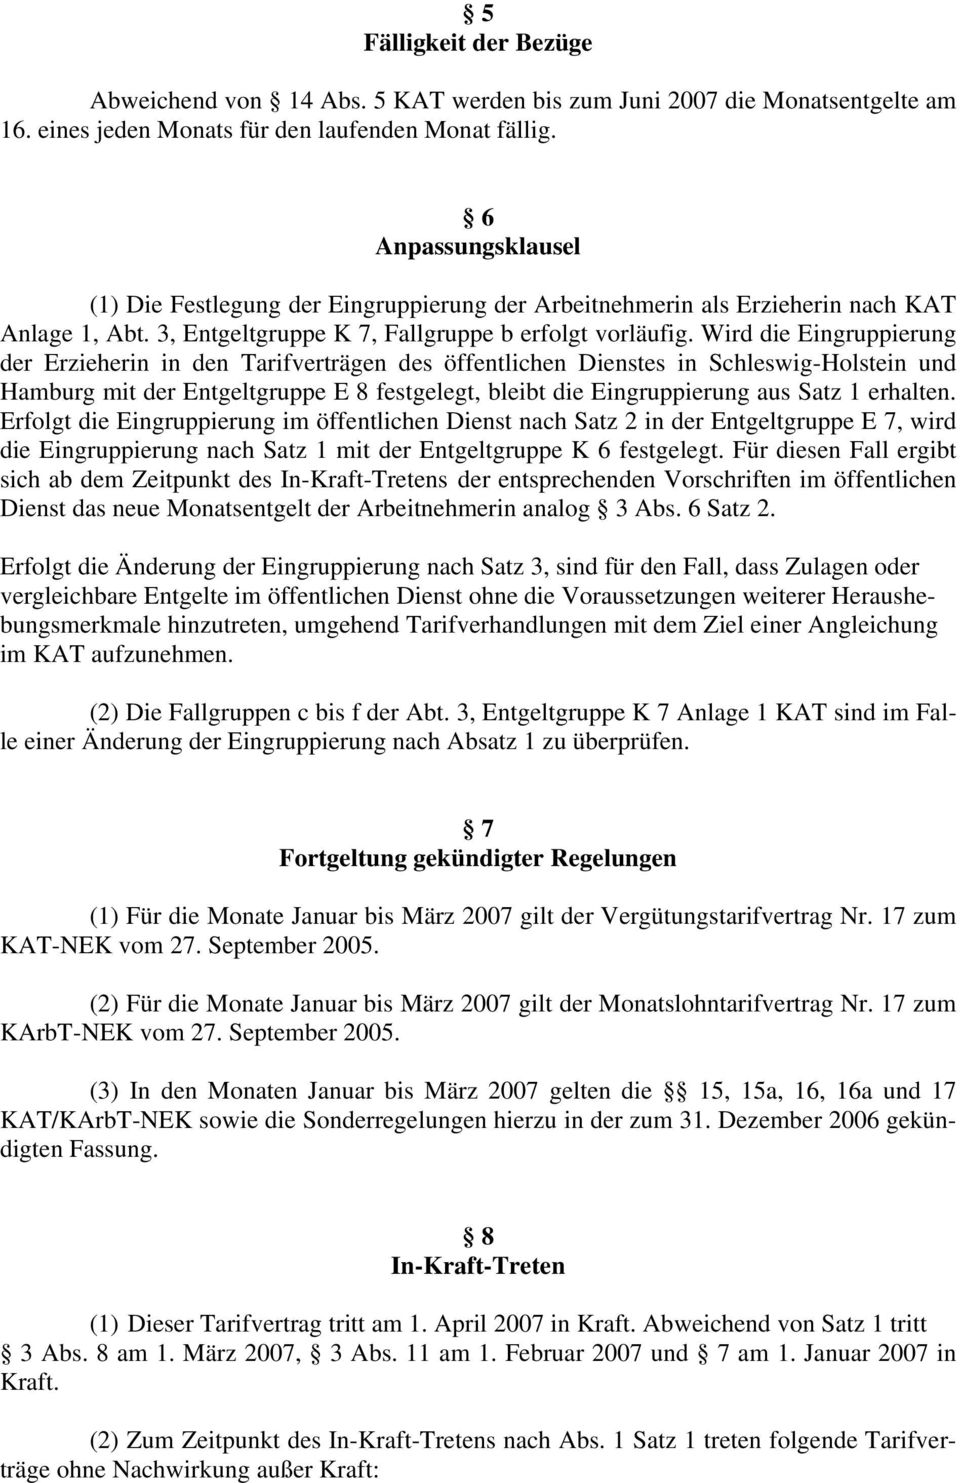 Wird die Eingruppierung der Erzieherin in den Tarifverträgen des öffentlichen Dienstes in Schleswig-Holstein und Hamburg mit der Entgeltgruppe E 8 festgelegt, bleibt die Eingruppierung aus Satz 1